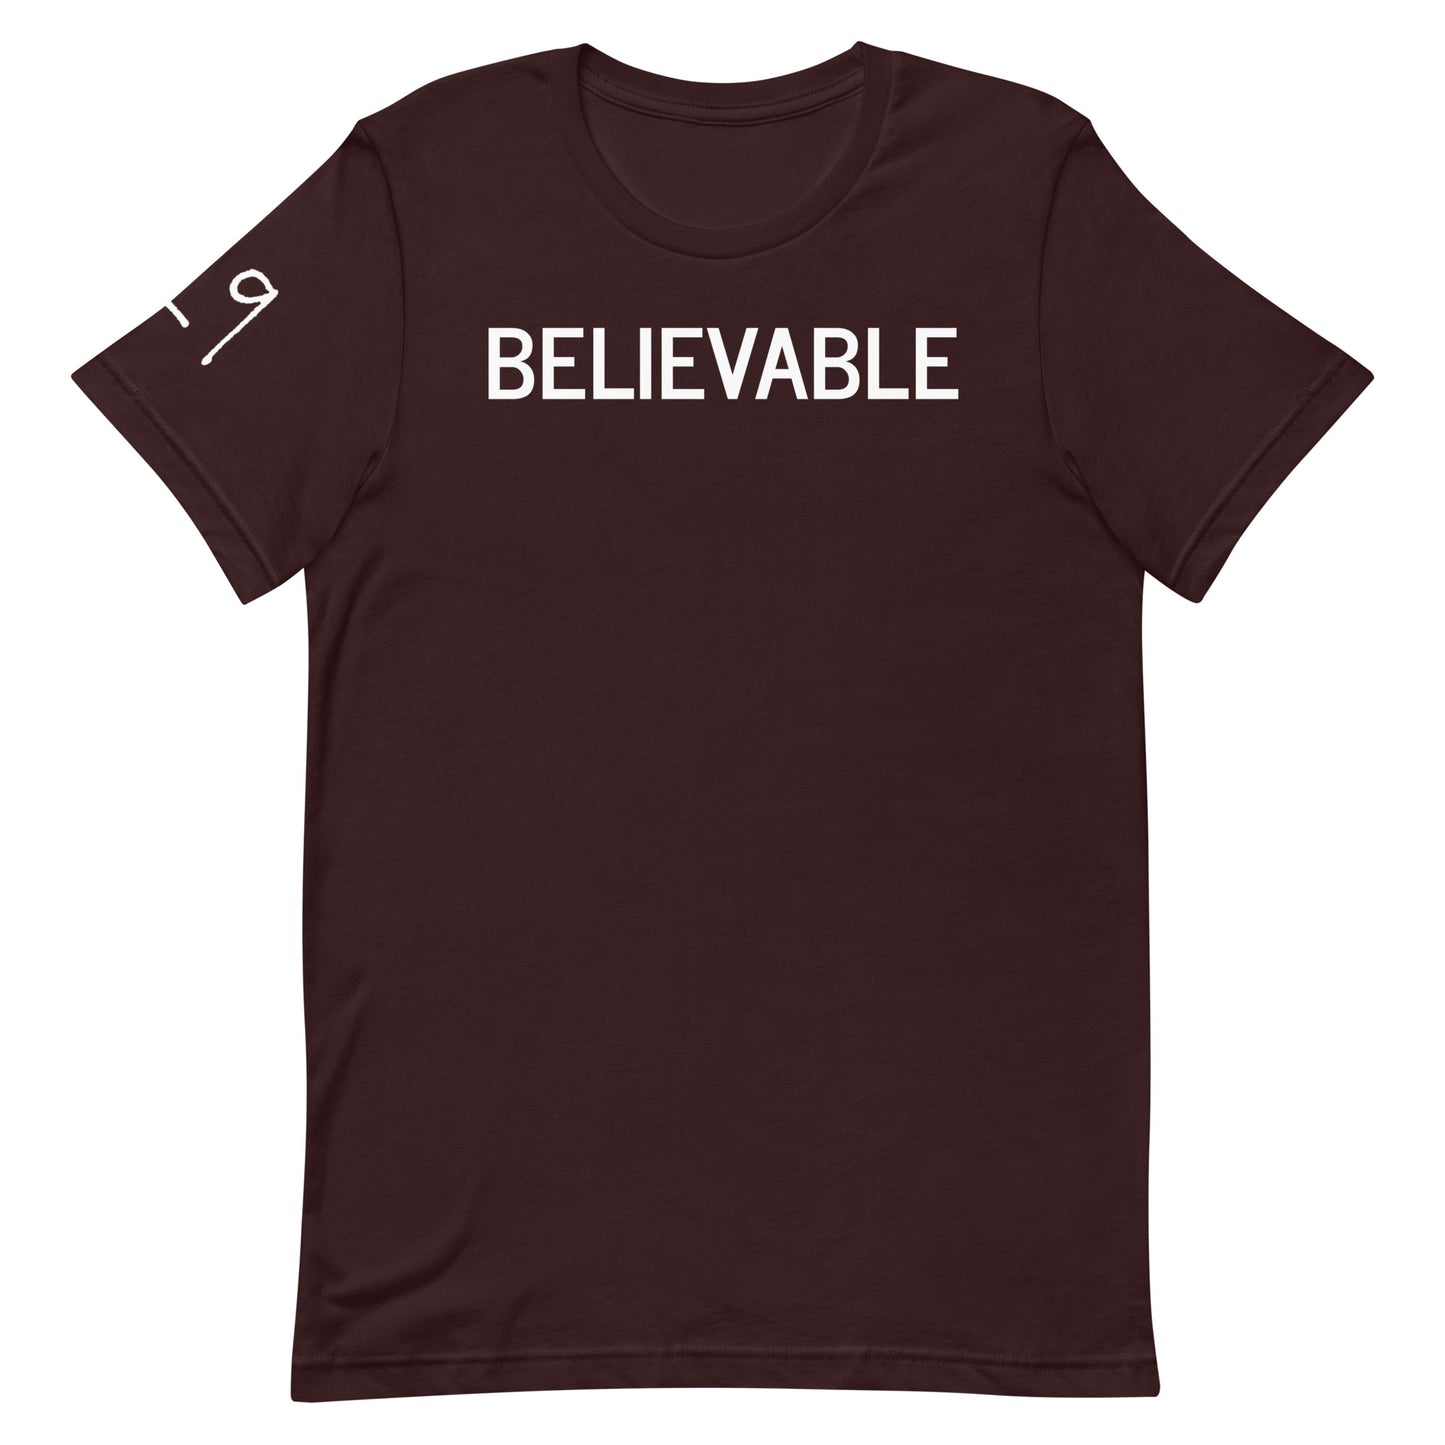 BELIEVABLE Logo T-Shirt